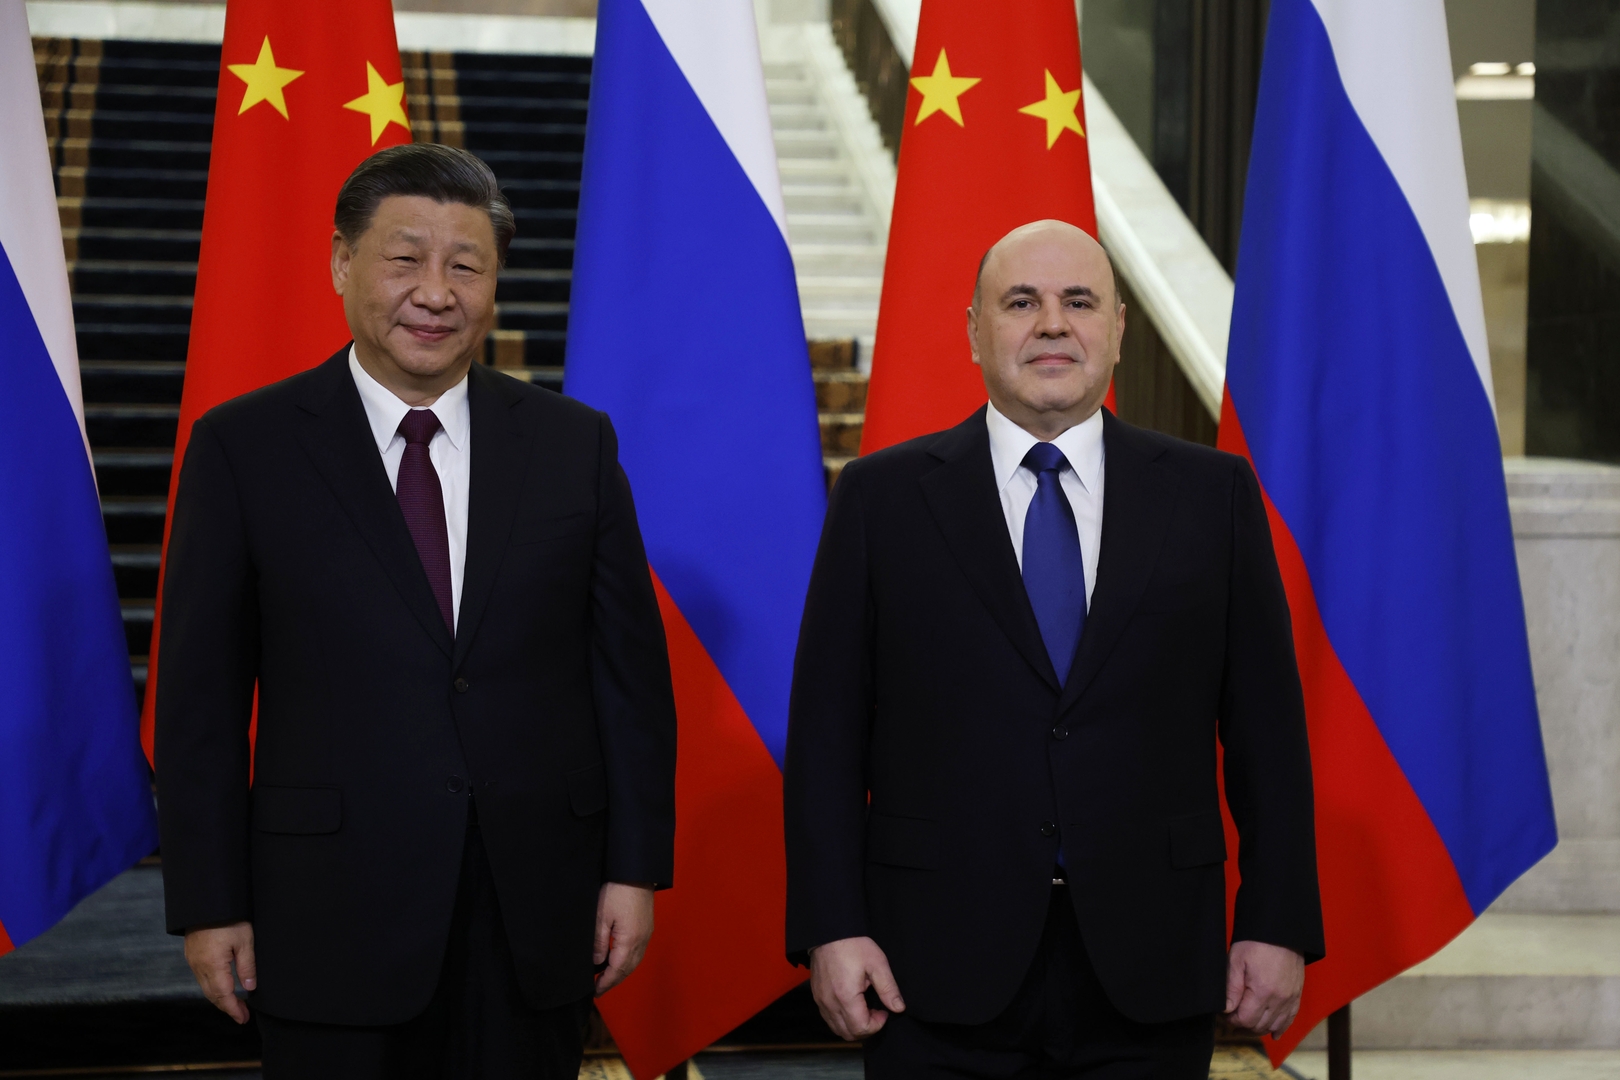 الرئيس الصيني: يتعين على موسكو وبكين تعزيز تحرير التجارة والاستثمار